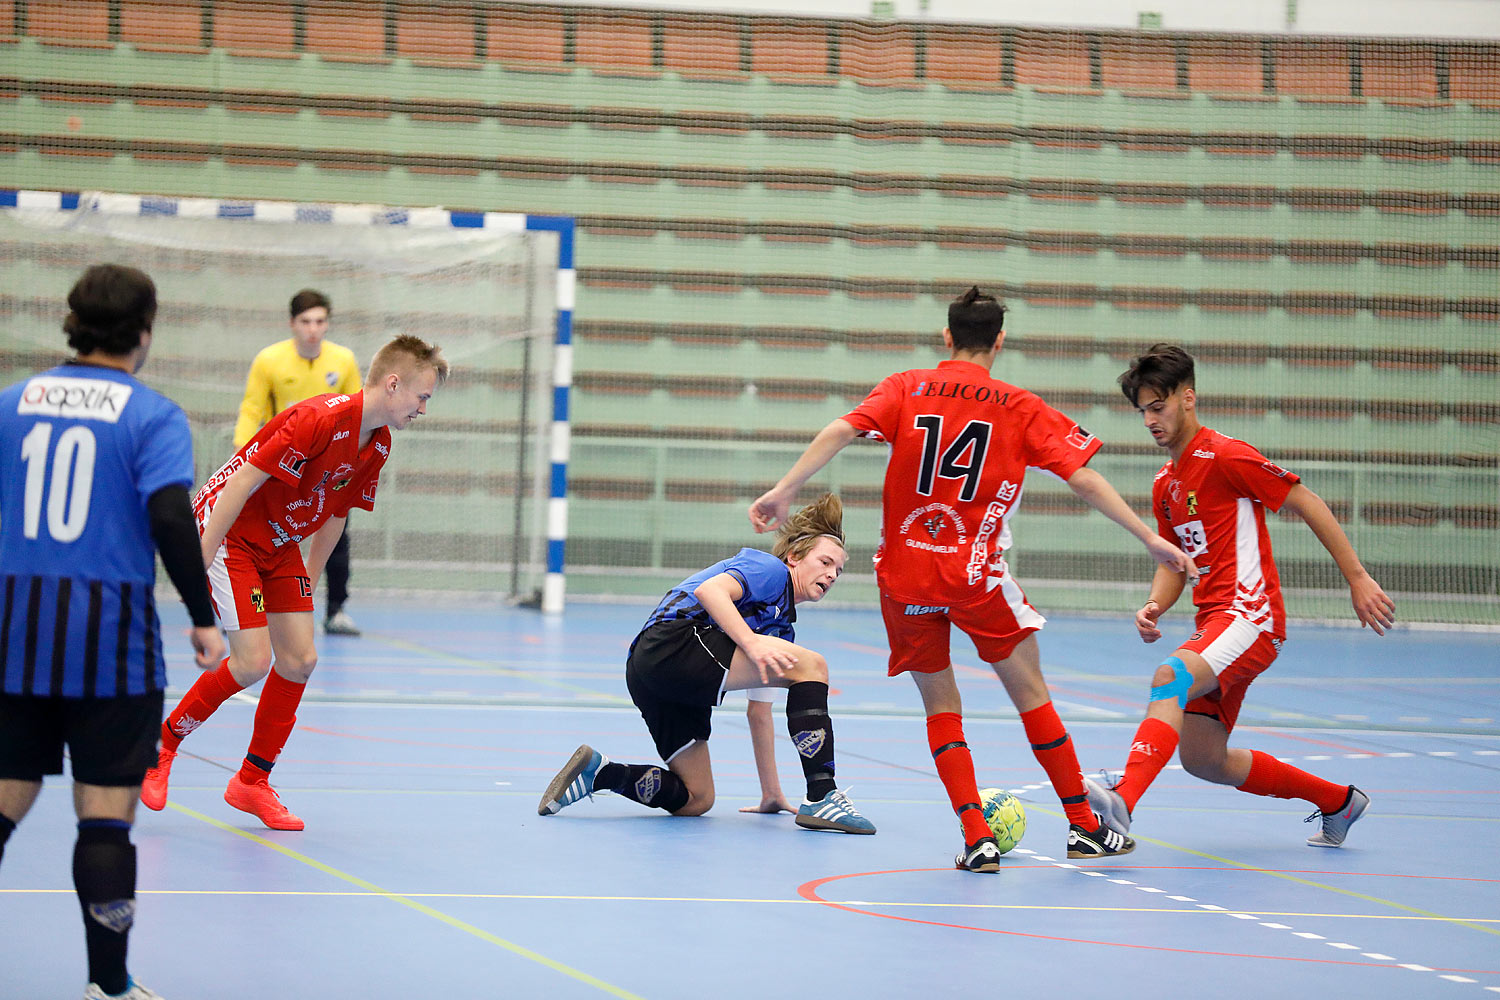 Skövde Futsalcup Herrjuniorer Ulricehamns IFK-Töreboda IK,herr,Arena Skövde,Skövde,Sverige,Skövde Futsalcup 2016,Futsal,2016,142004